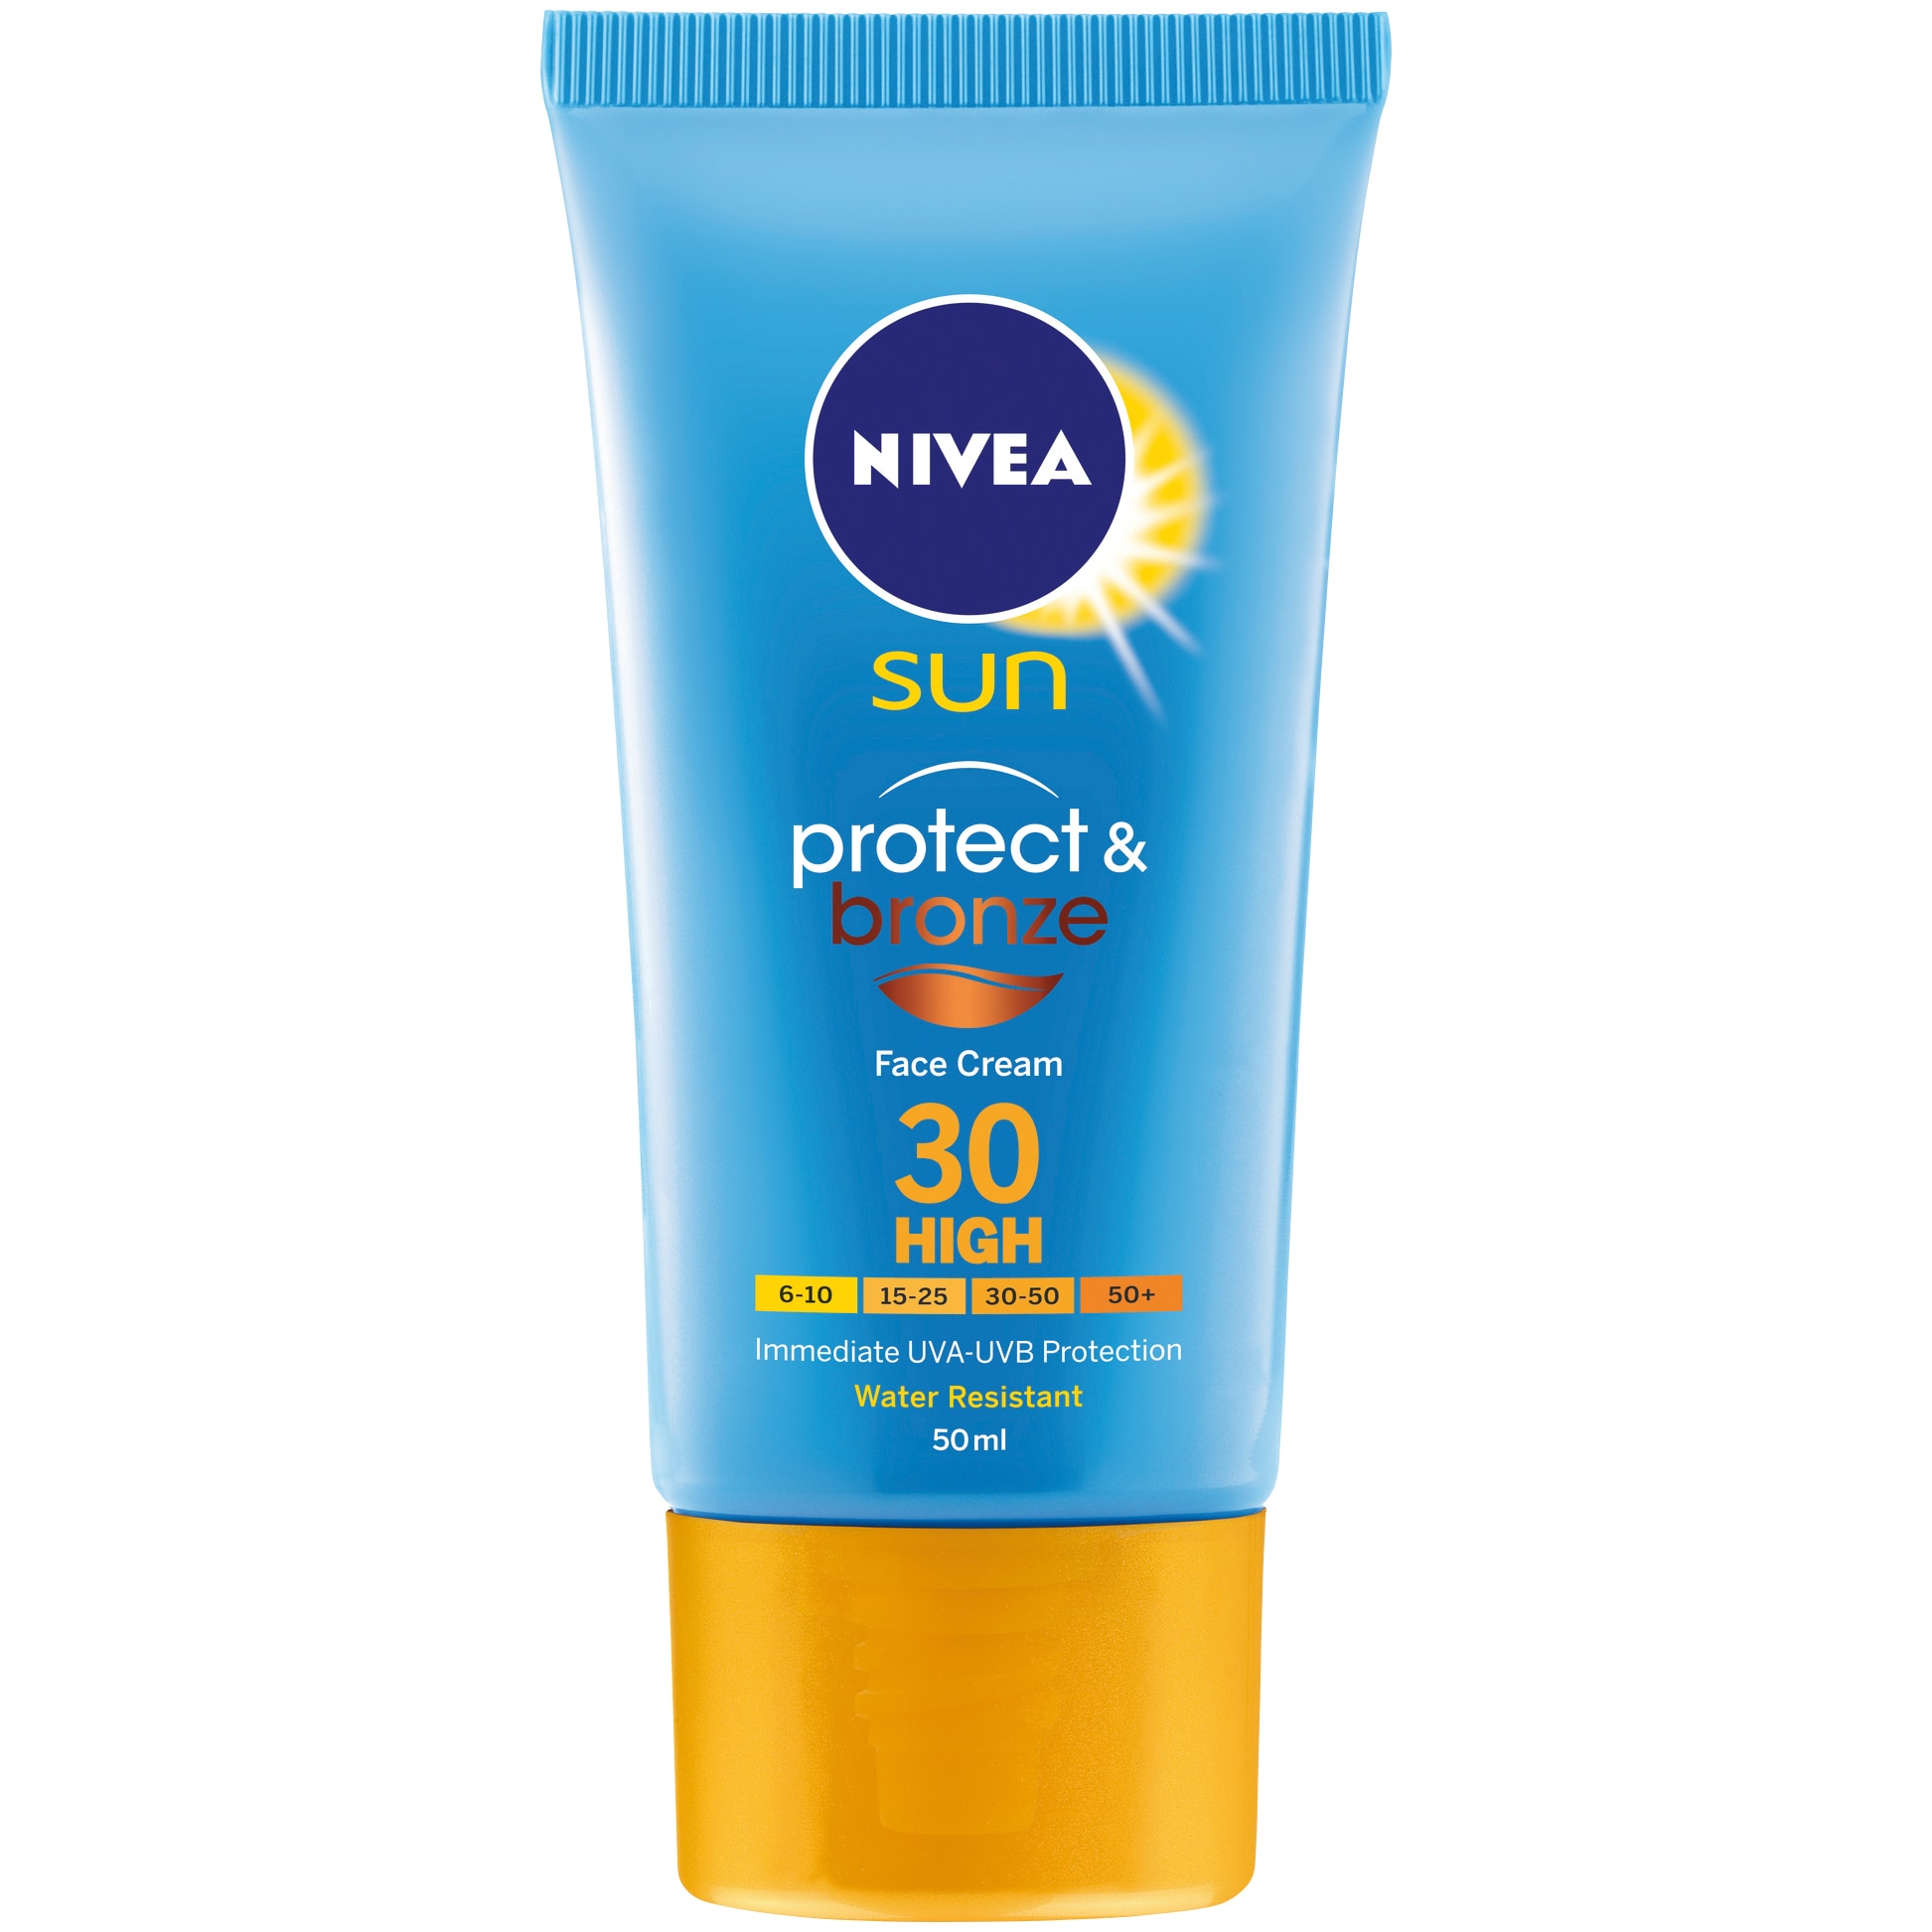 Какой солнцезащитный крем купить для лица. Nivea Sun SPF 50 крем. Нивея СПФ 50 для лица. Sun protect spf50 солнцезащитный крем для лица, 50 мл.. Крем нивея солнцезащитный 50 для лица.